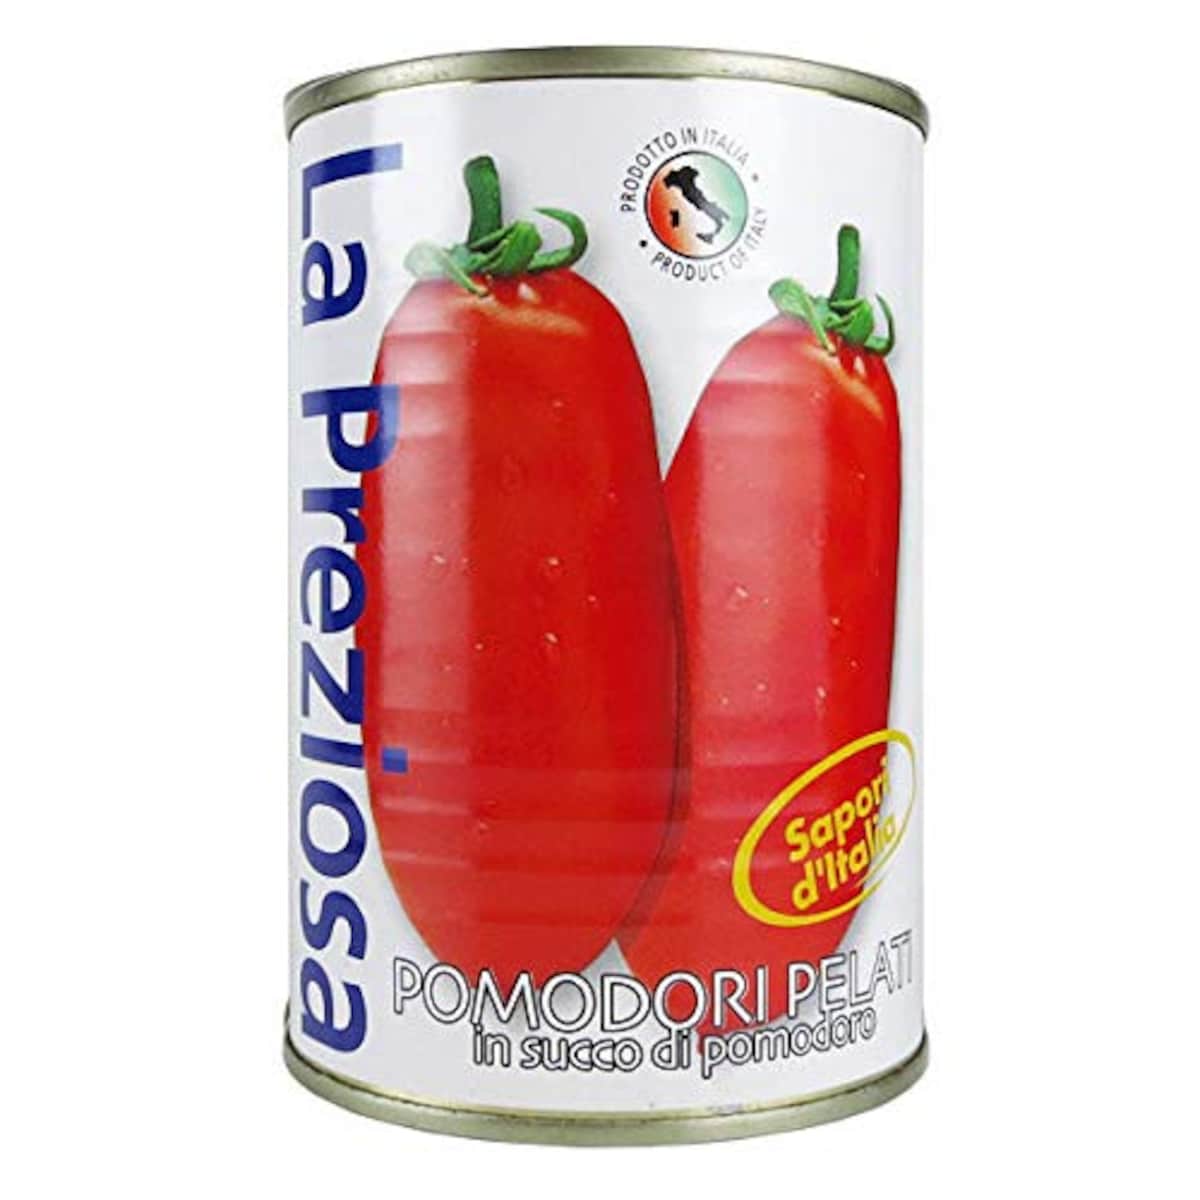  ホールトマト缶